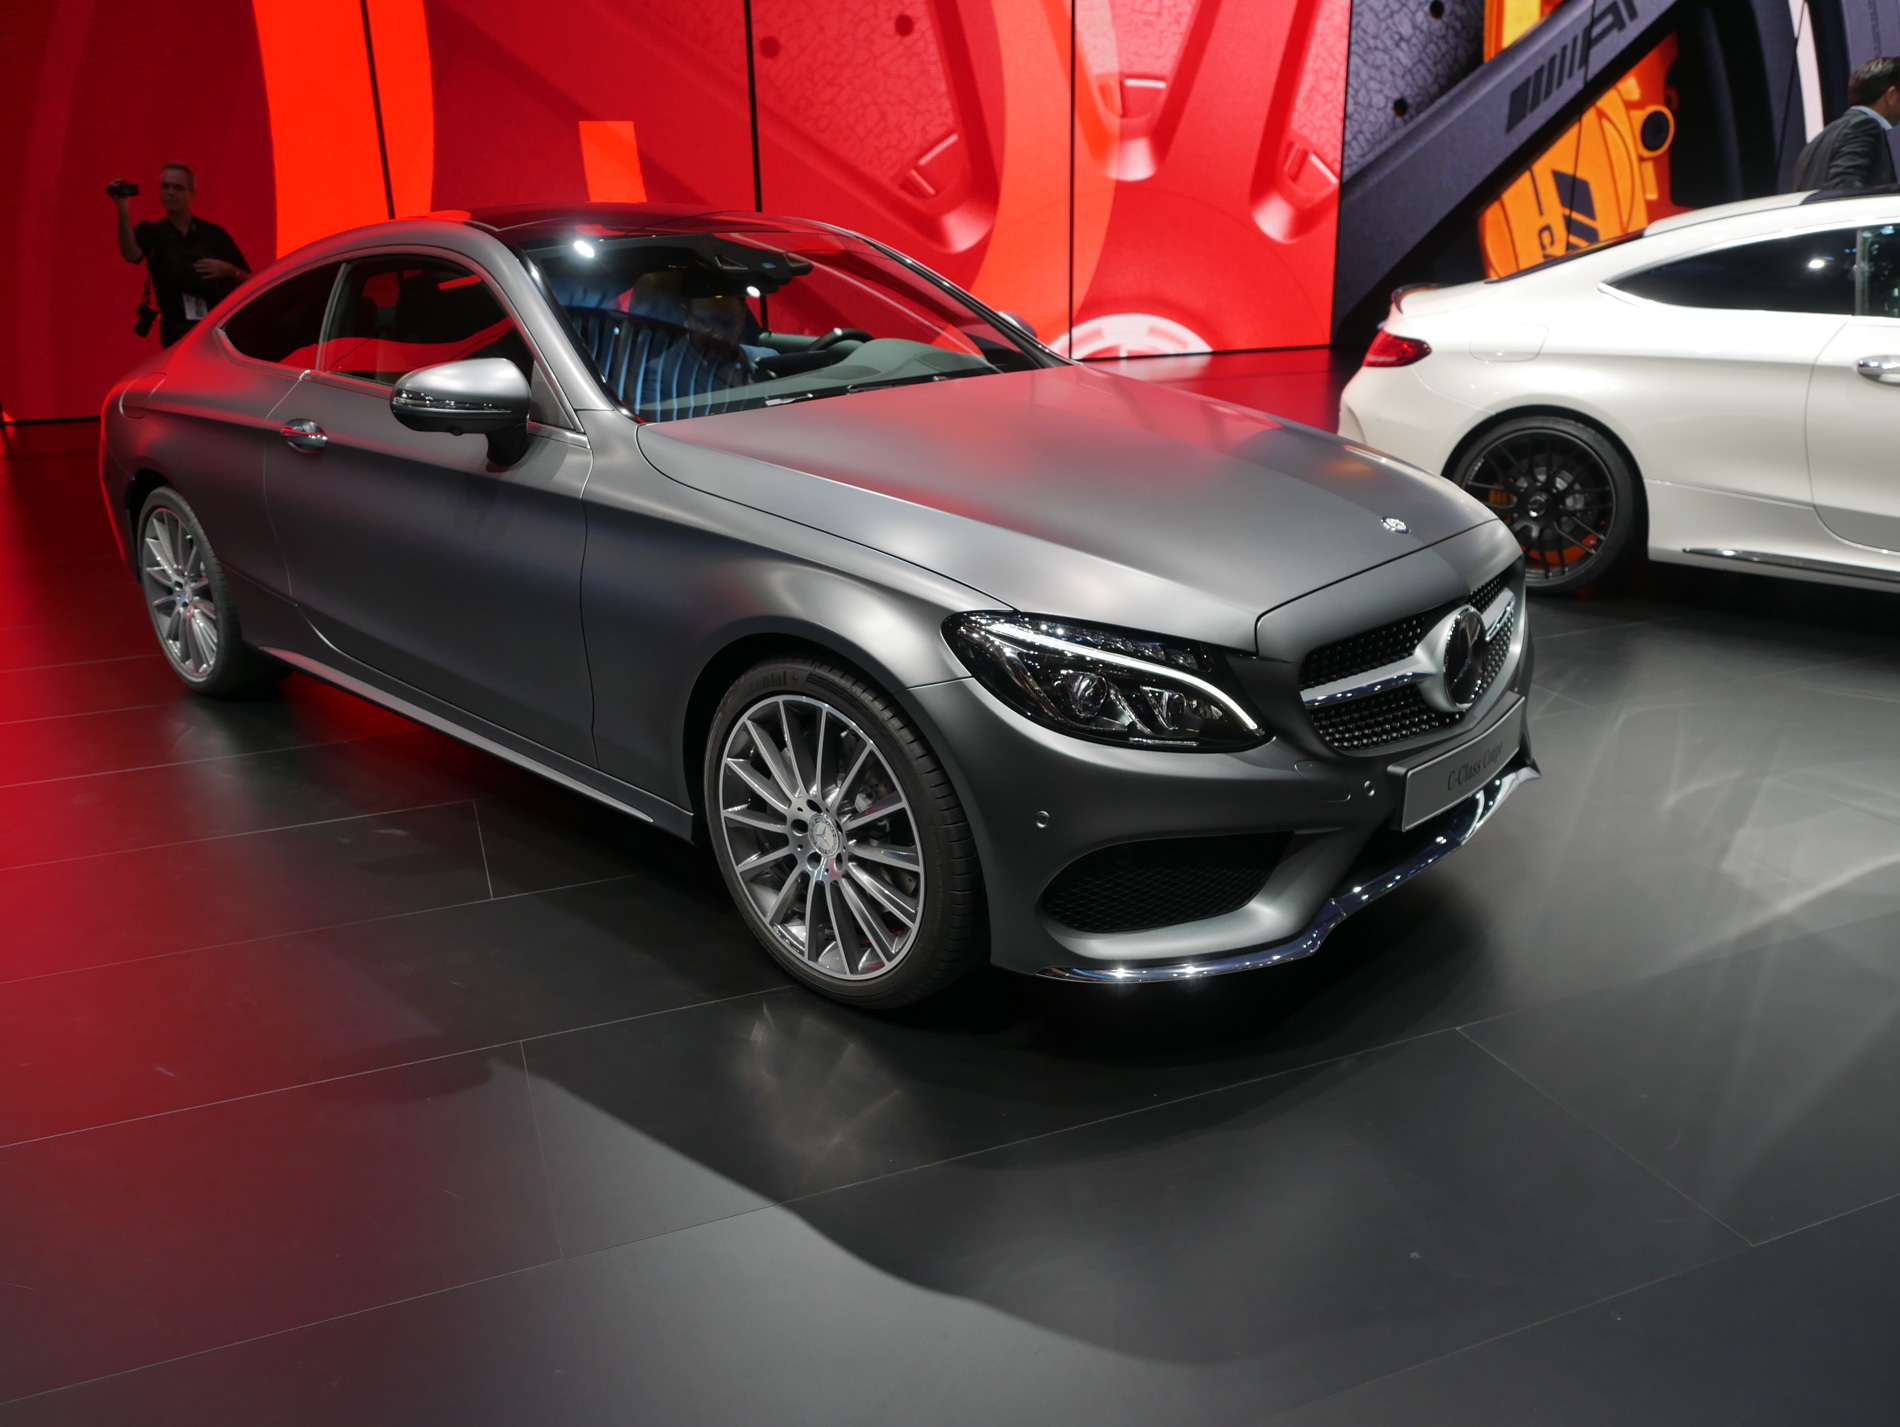 Mercedes-Benz in Frankfurt Ein Symbol für Innovation und Luxus